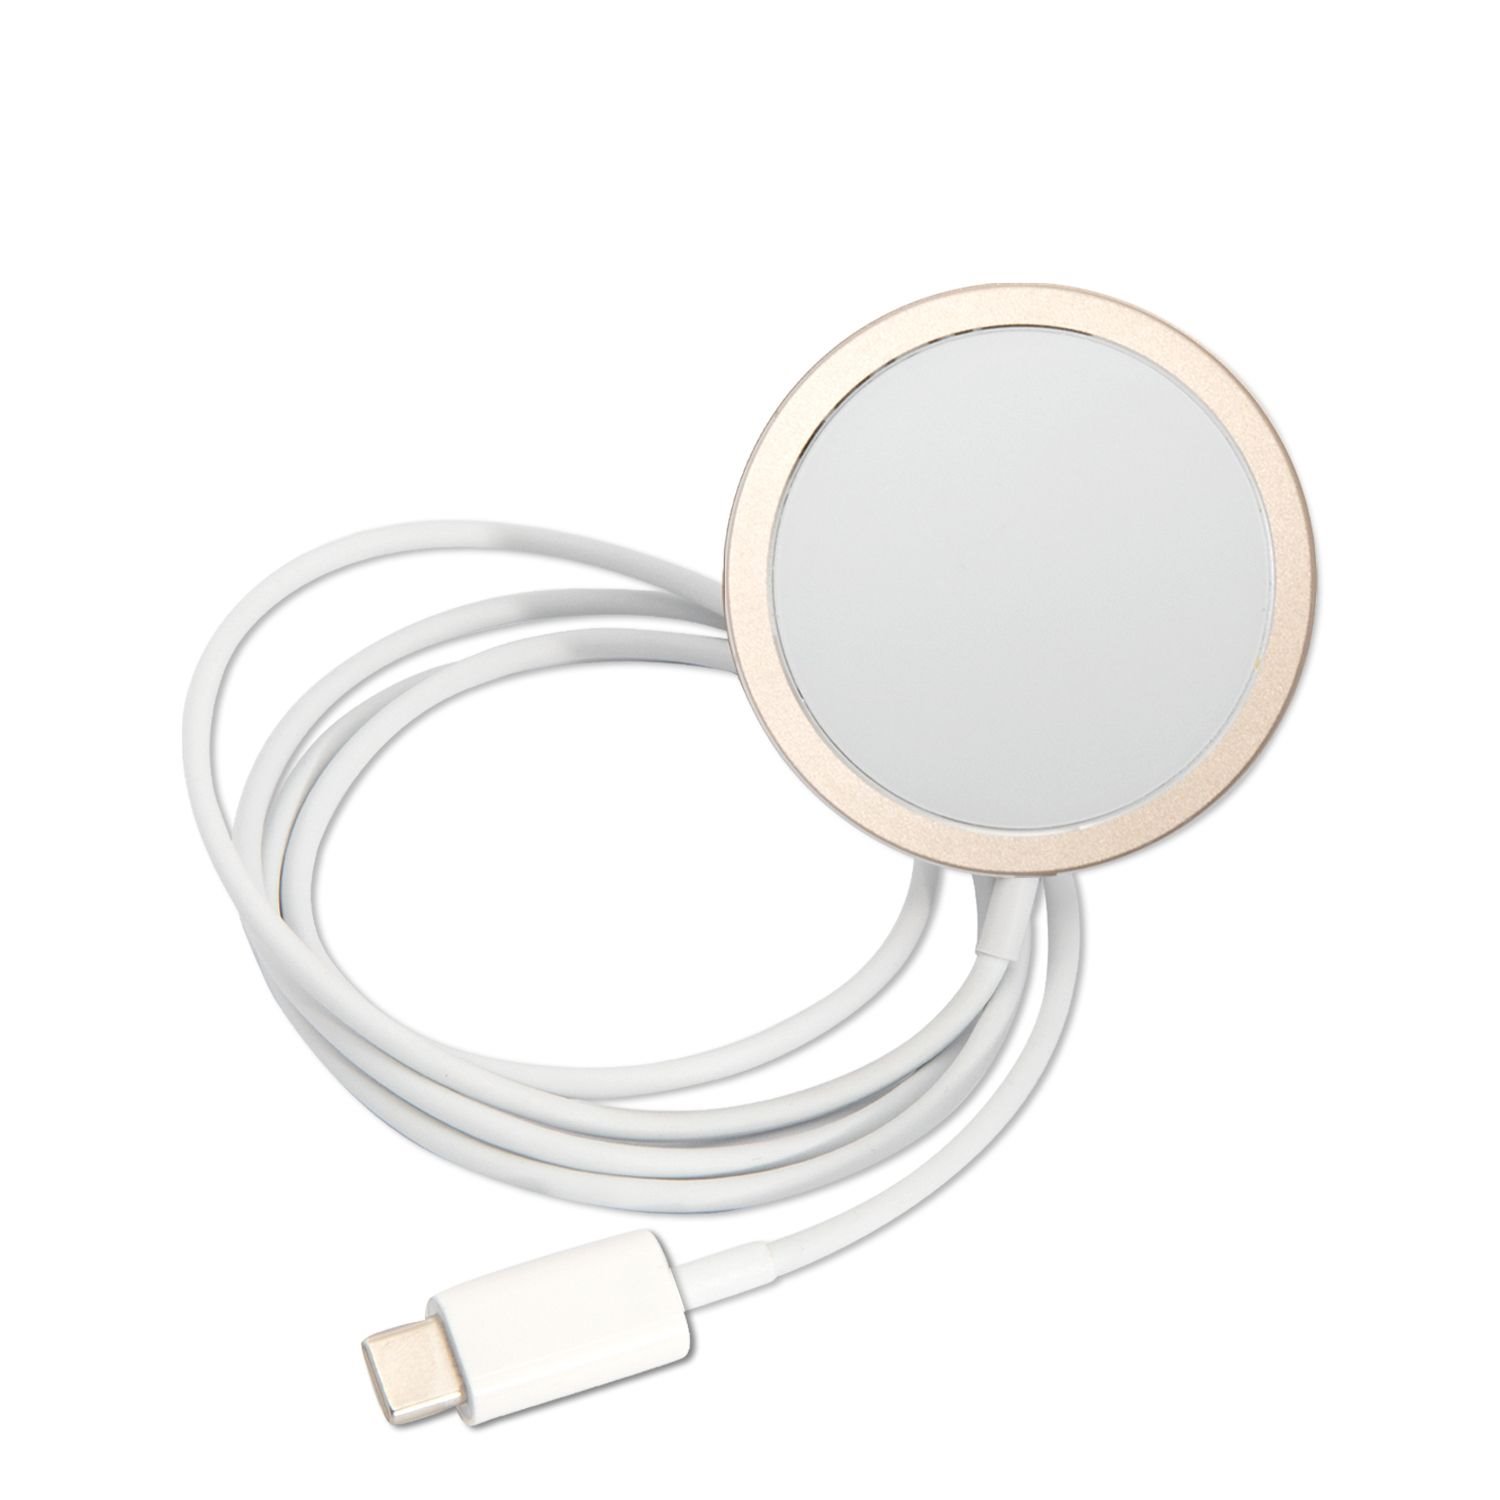 Guess 4G MagSafe Kompatibilní Zadní Kryt + Bezdrátová Nabíječka pro iPhone 14 Pro Max Pink